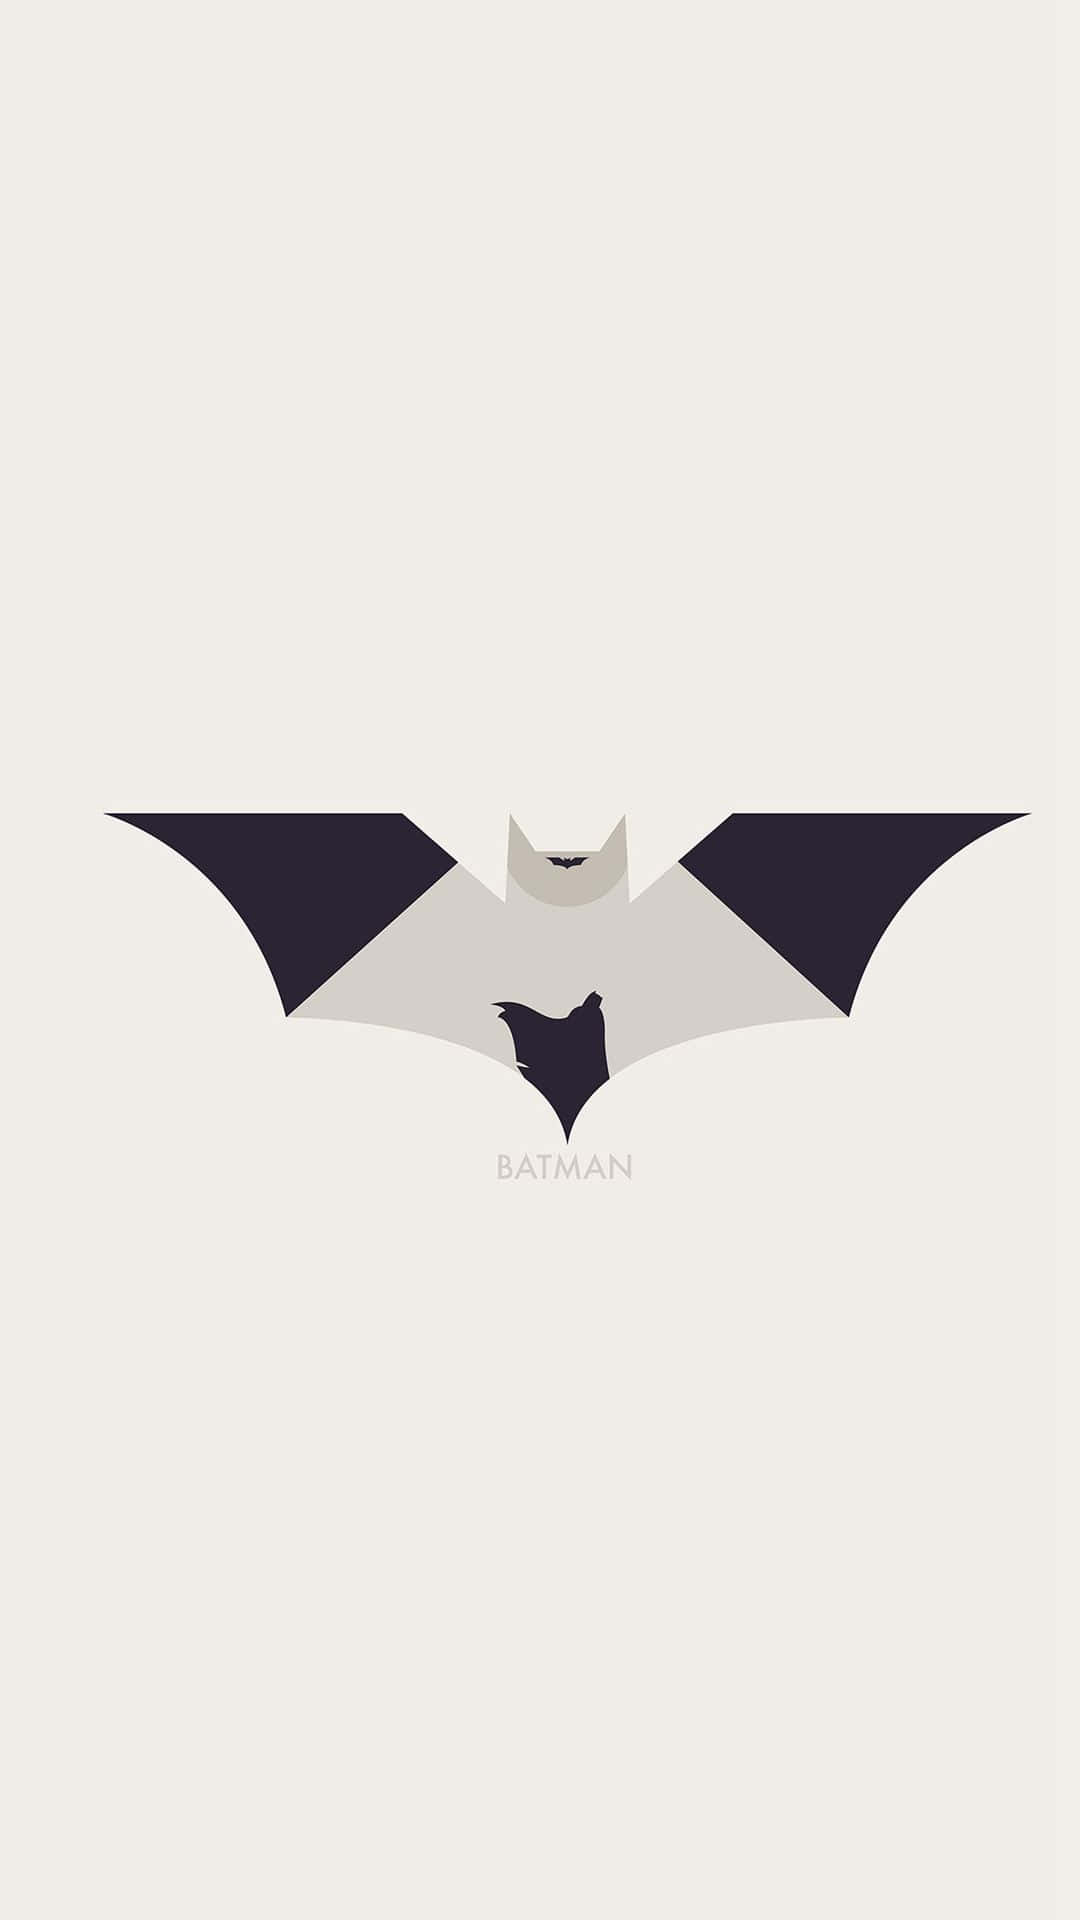 Logoestetico Di Batman In Bianco E Nero. Sfondo